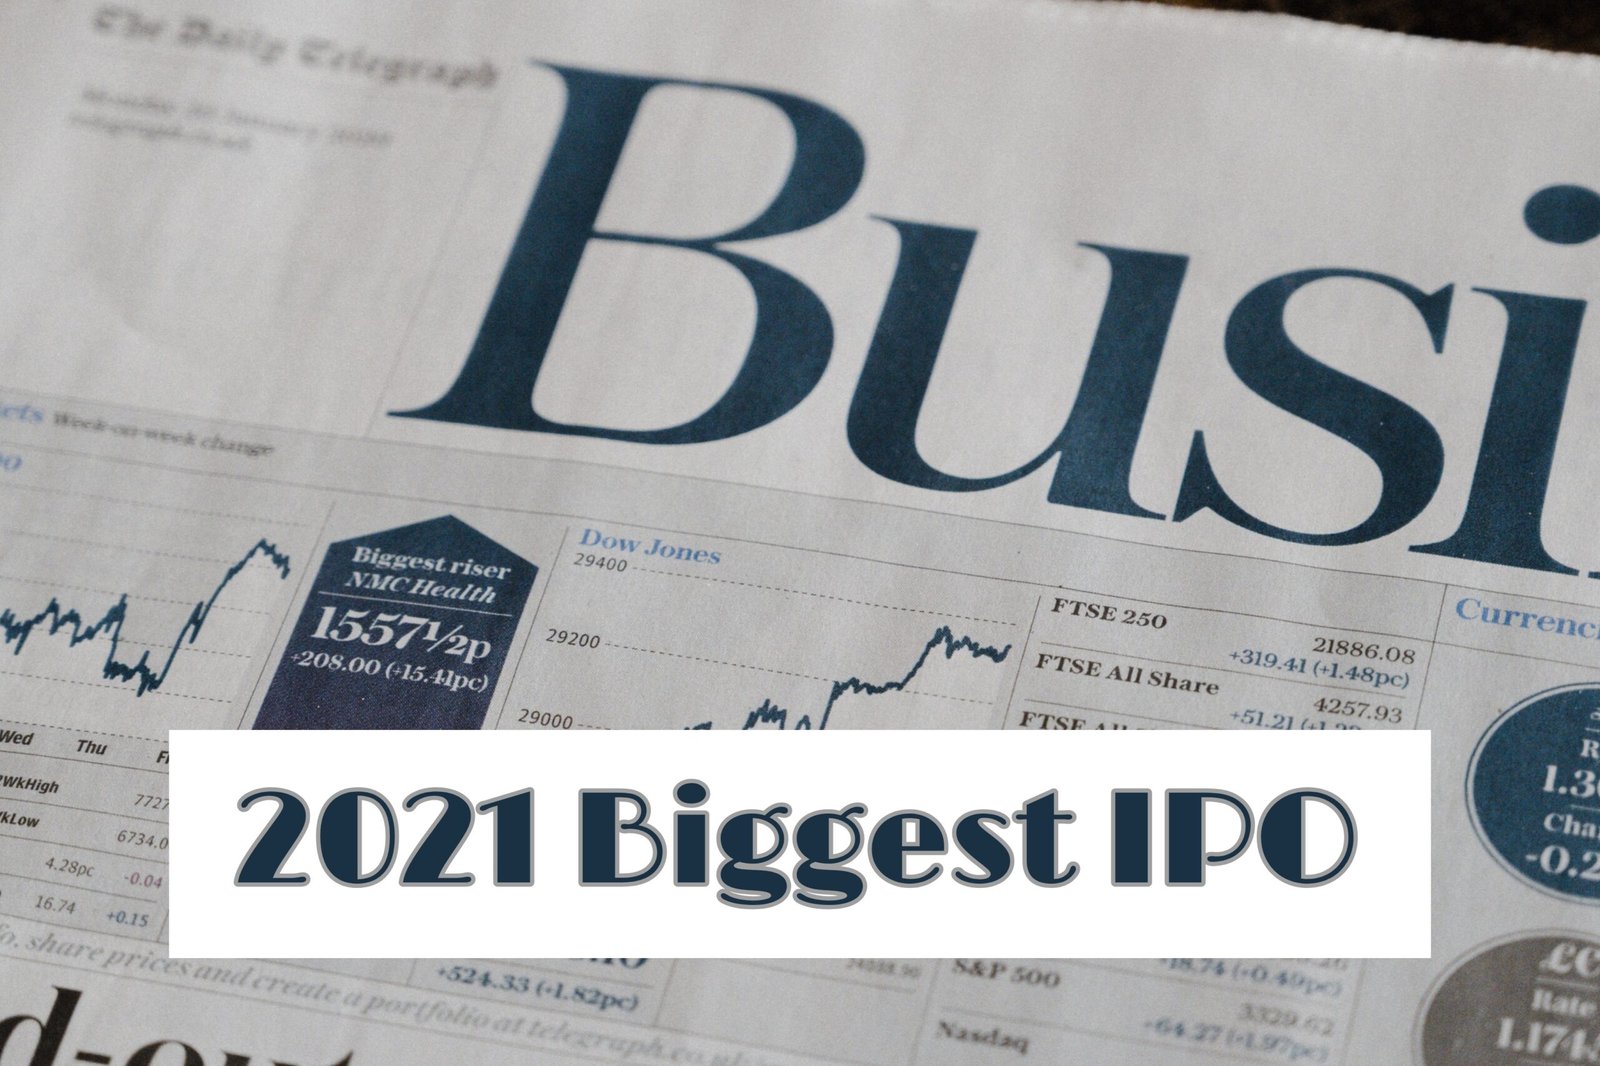 Top 10 Biggest IPO